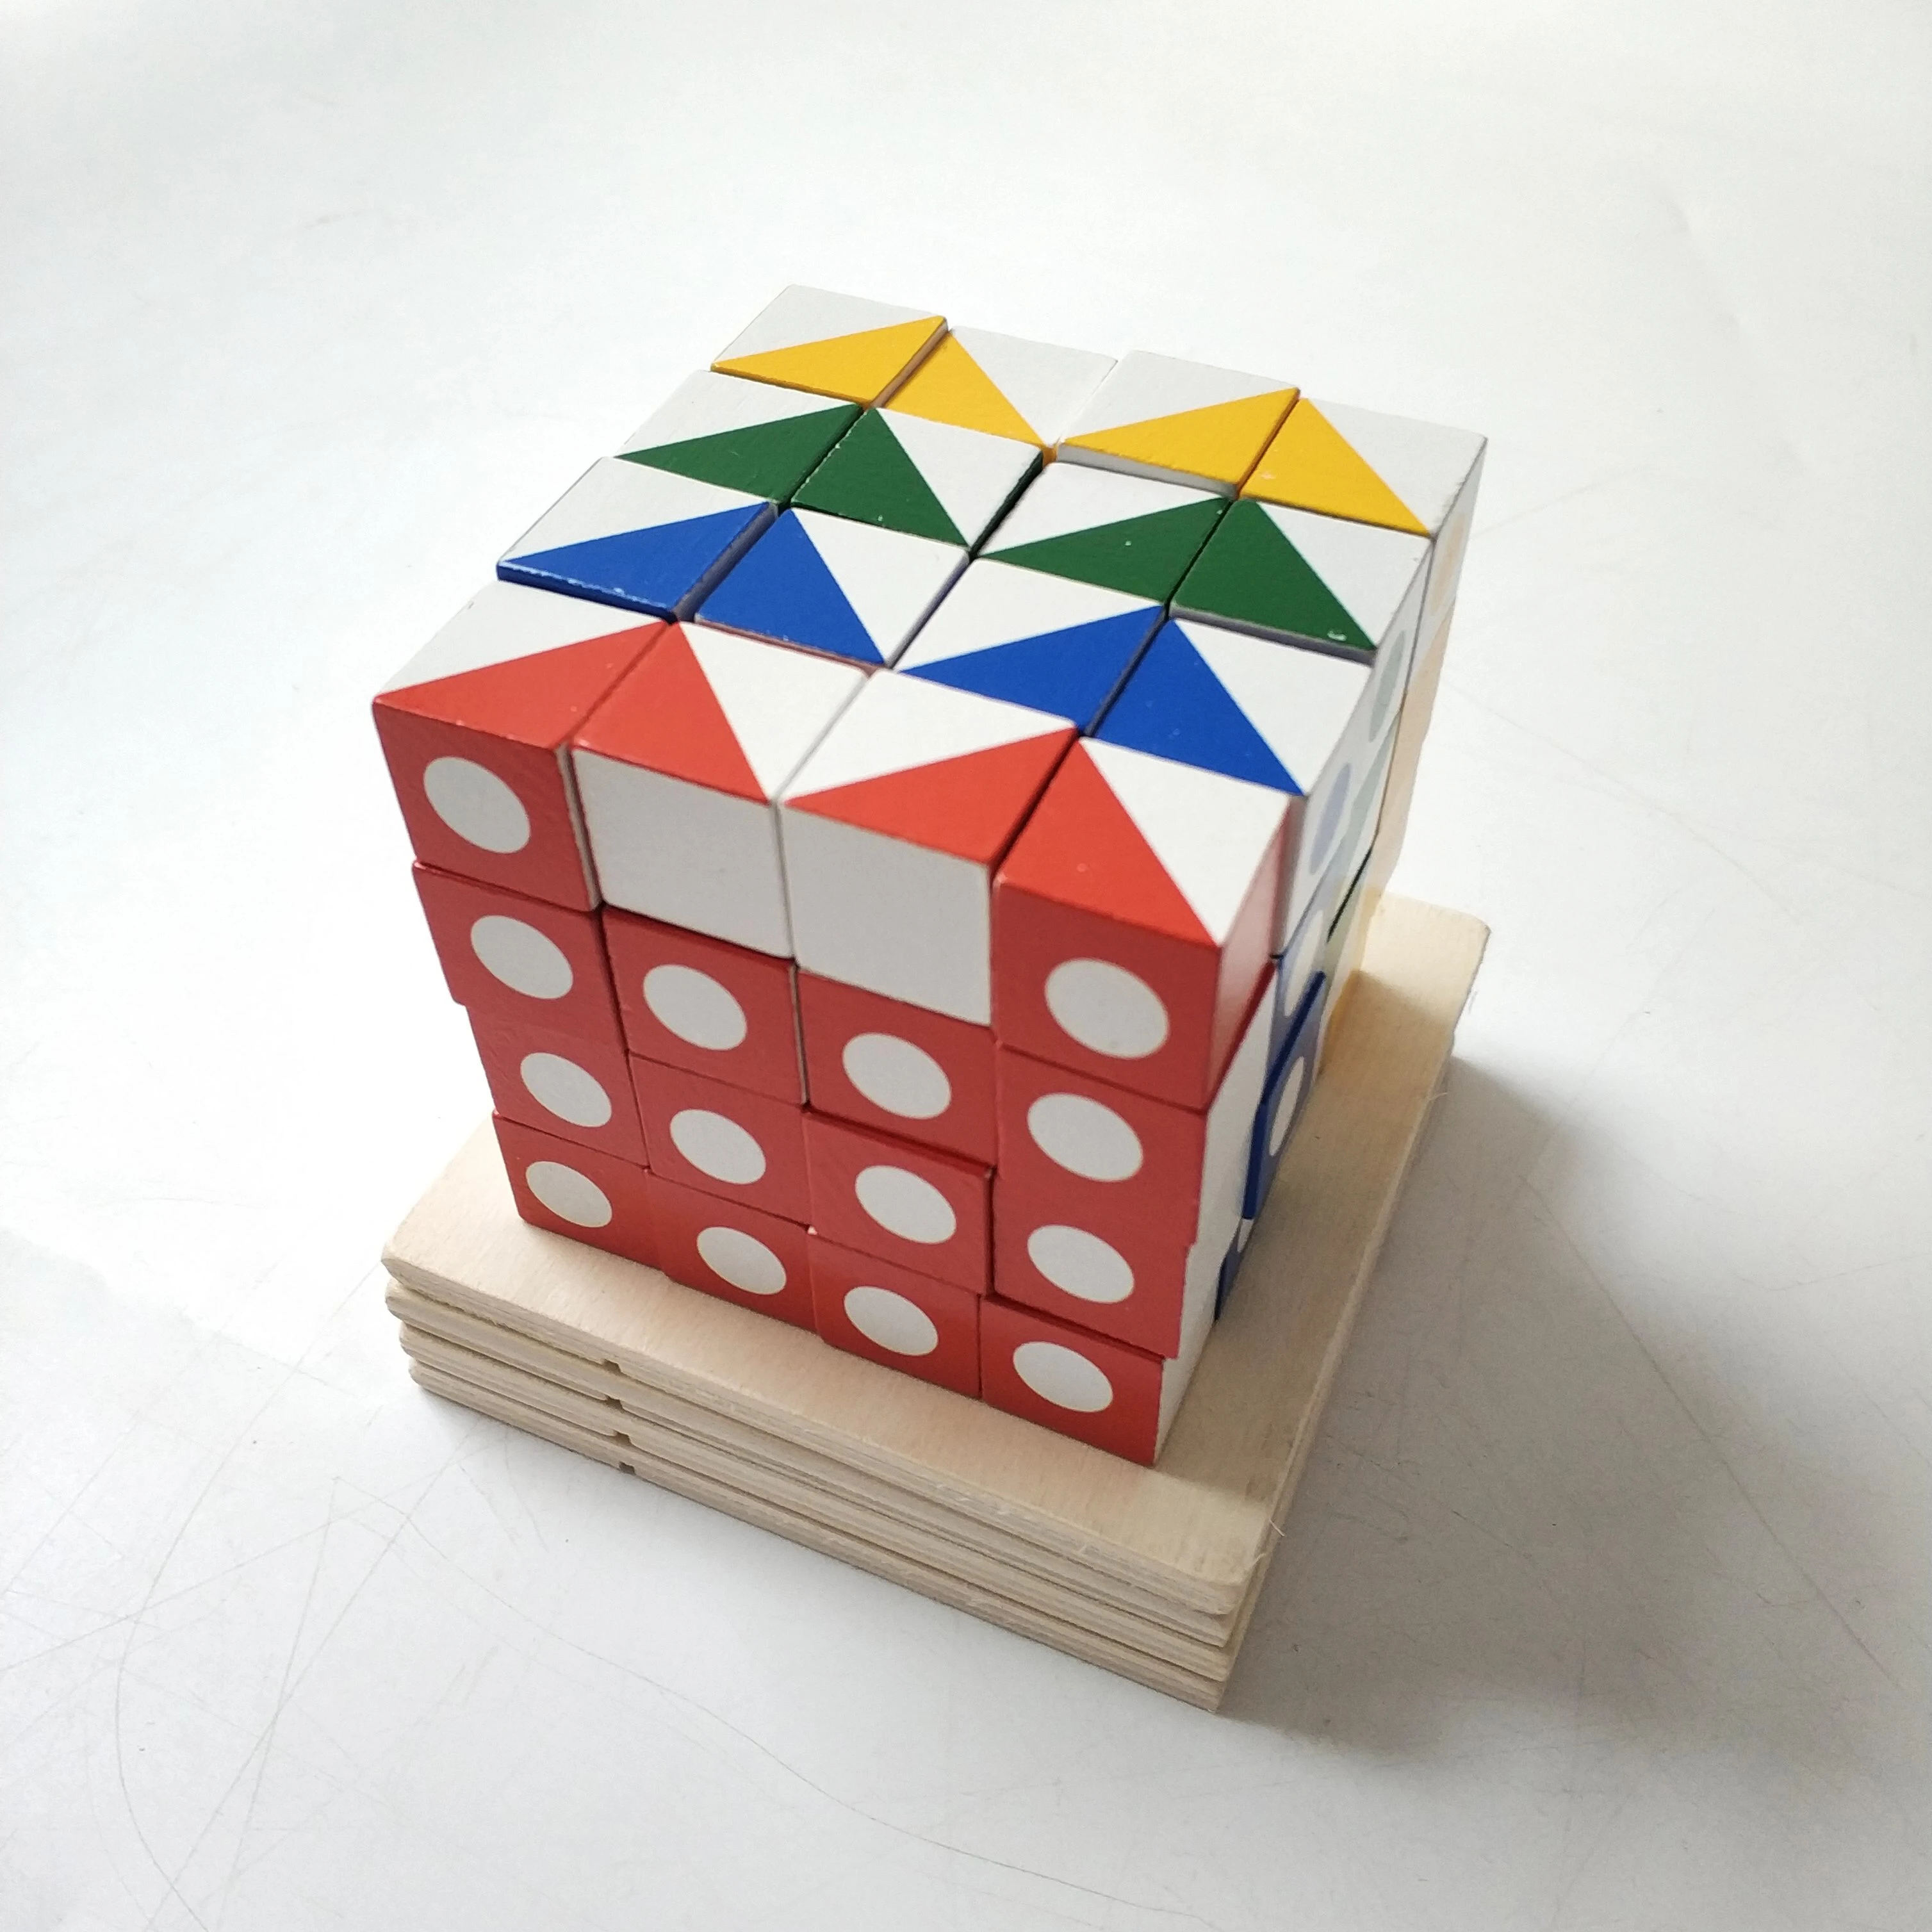 Игра для дошкольников, Семейная Игра, деревянные Обучающие игрушки, строительные блоки Brainstorm, строительные кубики Q-bitz